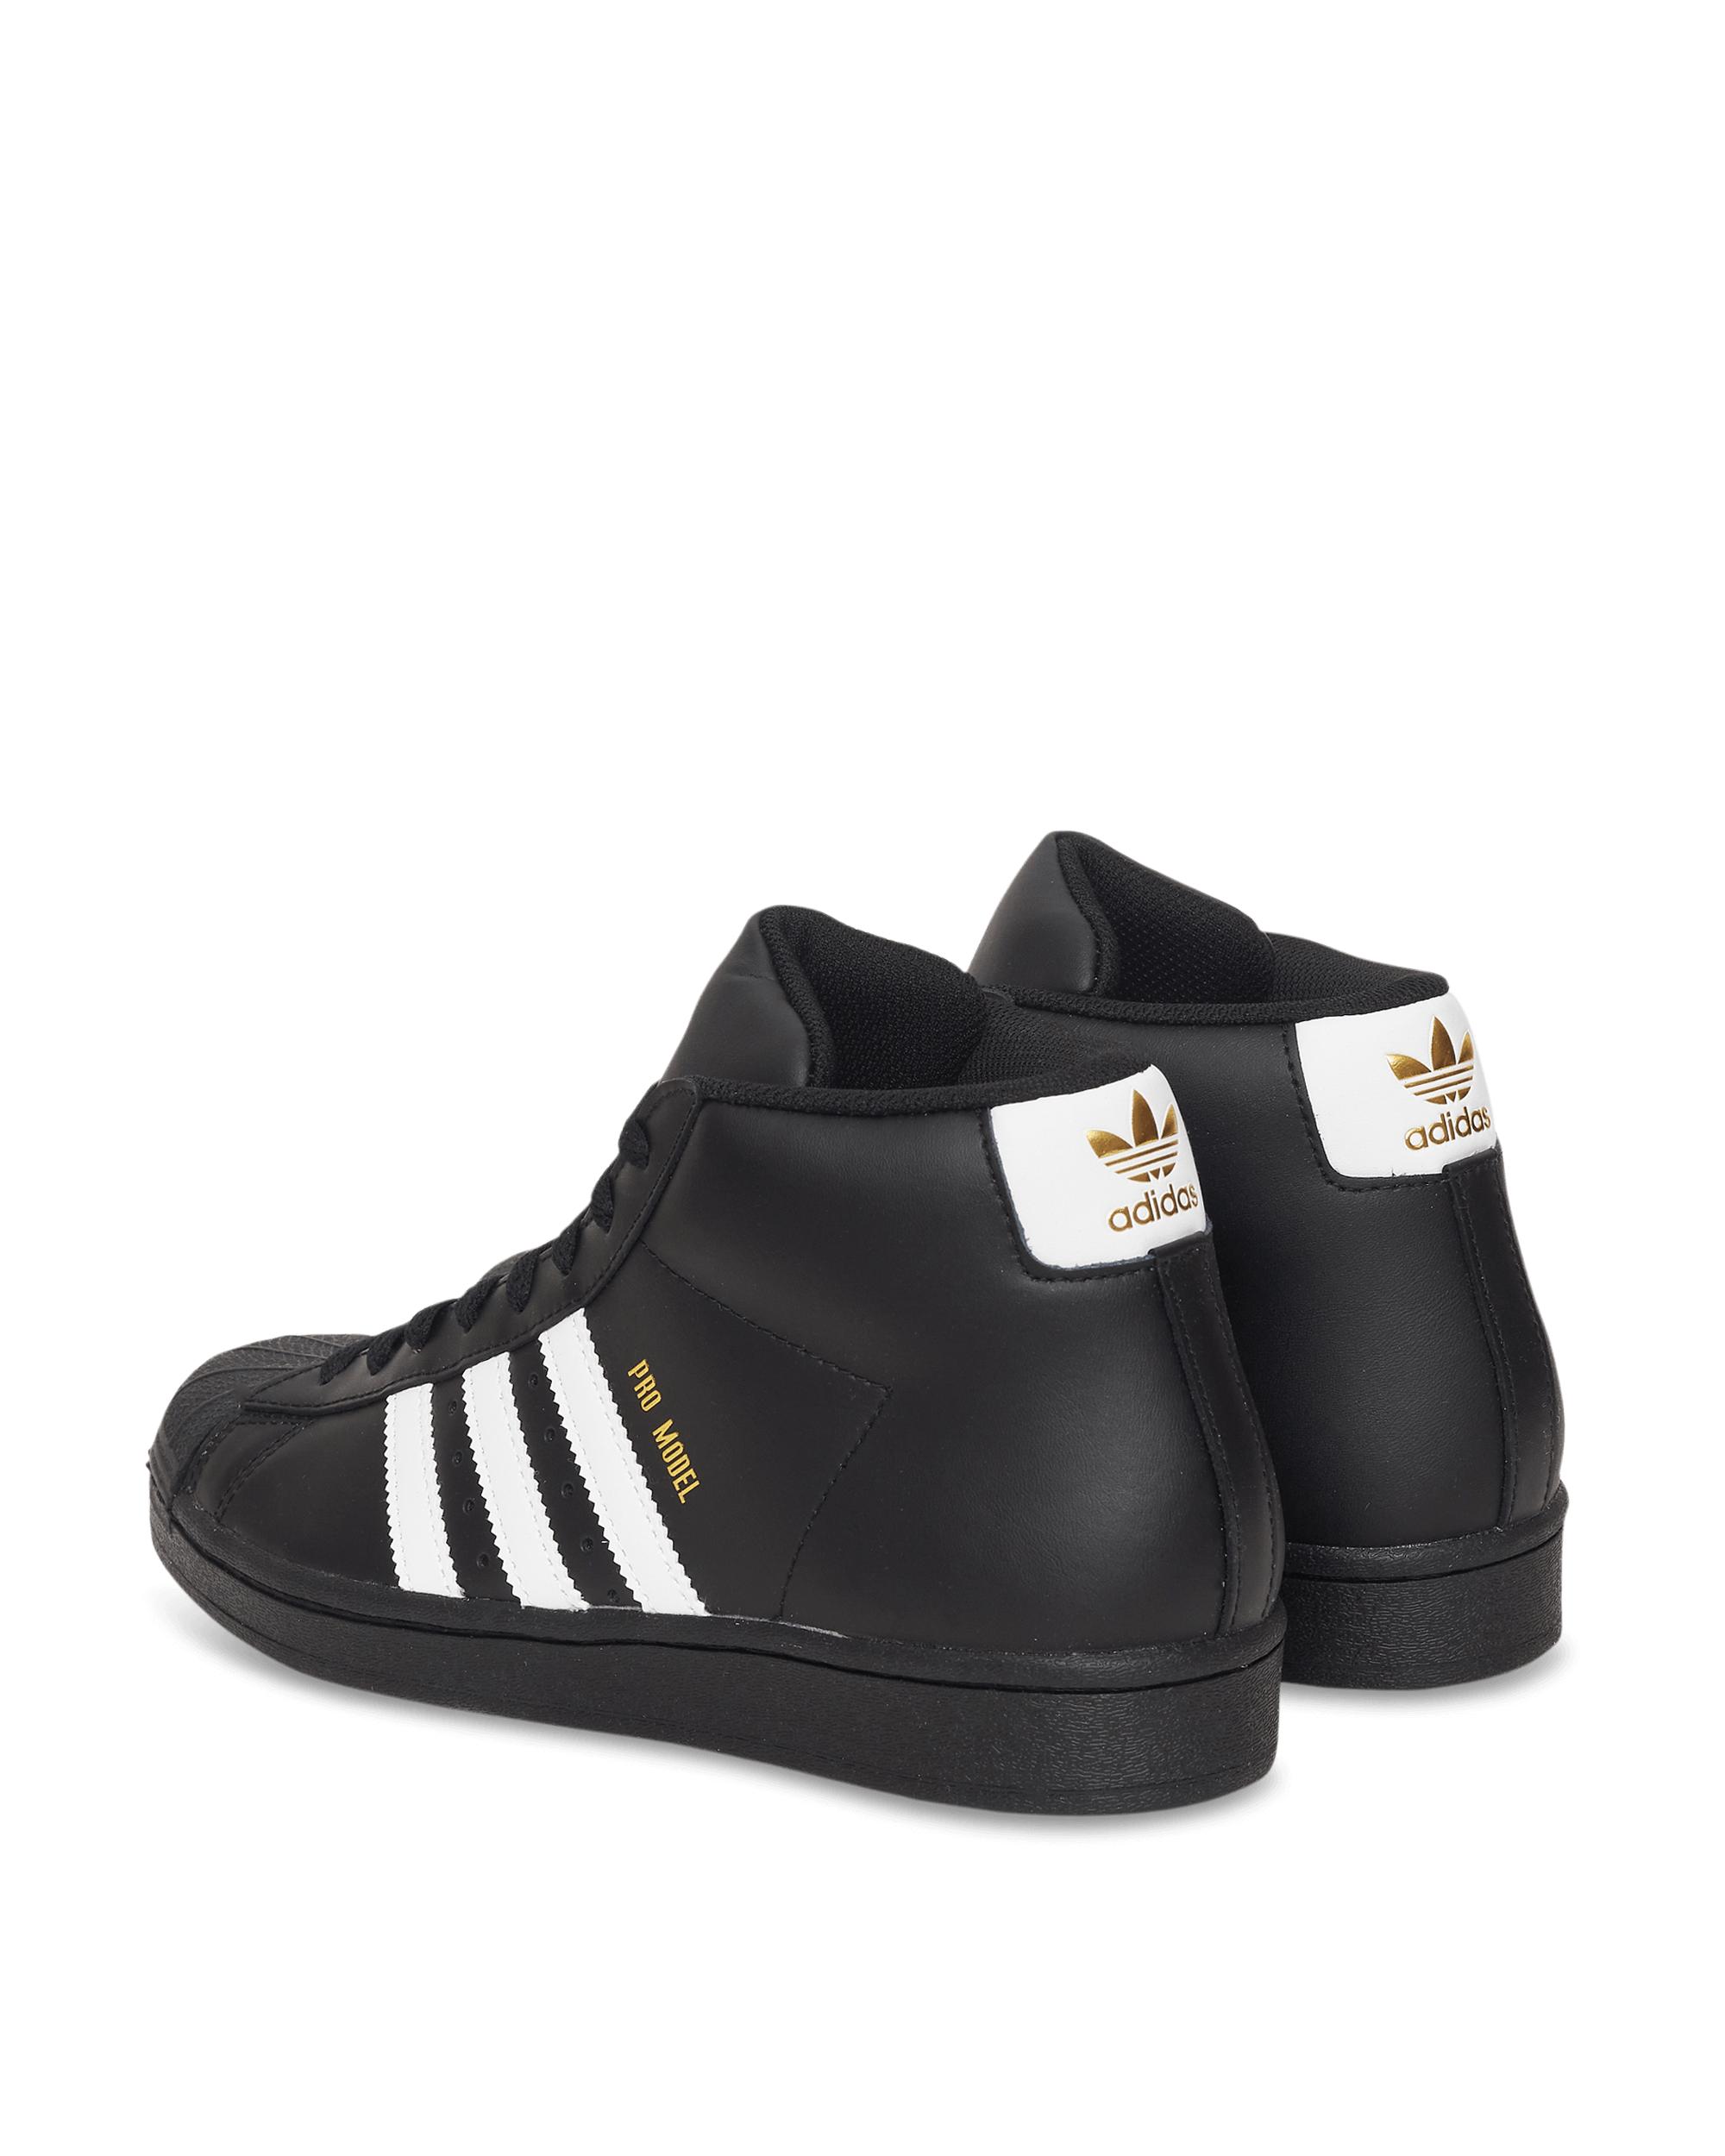 adidas Originals Pro Model - Shoes in Black/Black/Black (Black) for Men -  Save 49% | Lyst